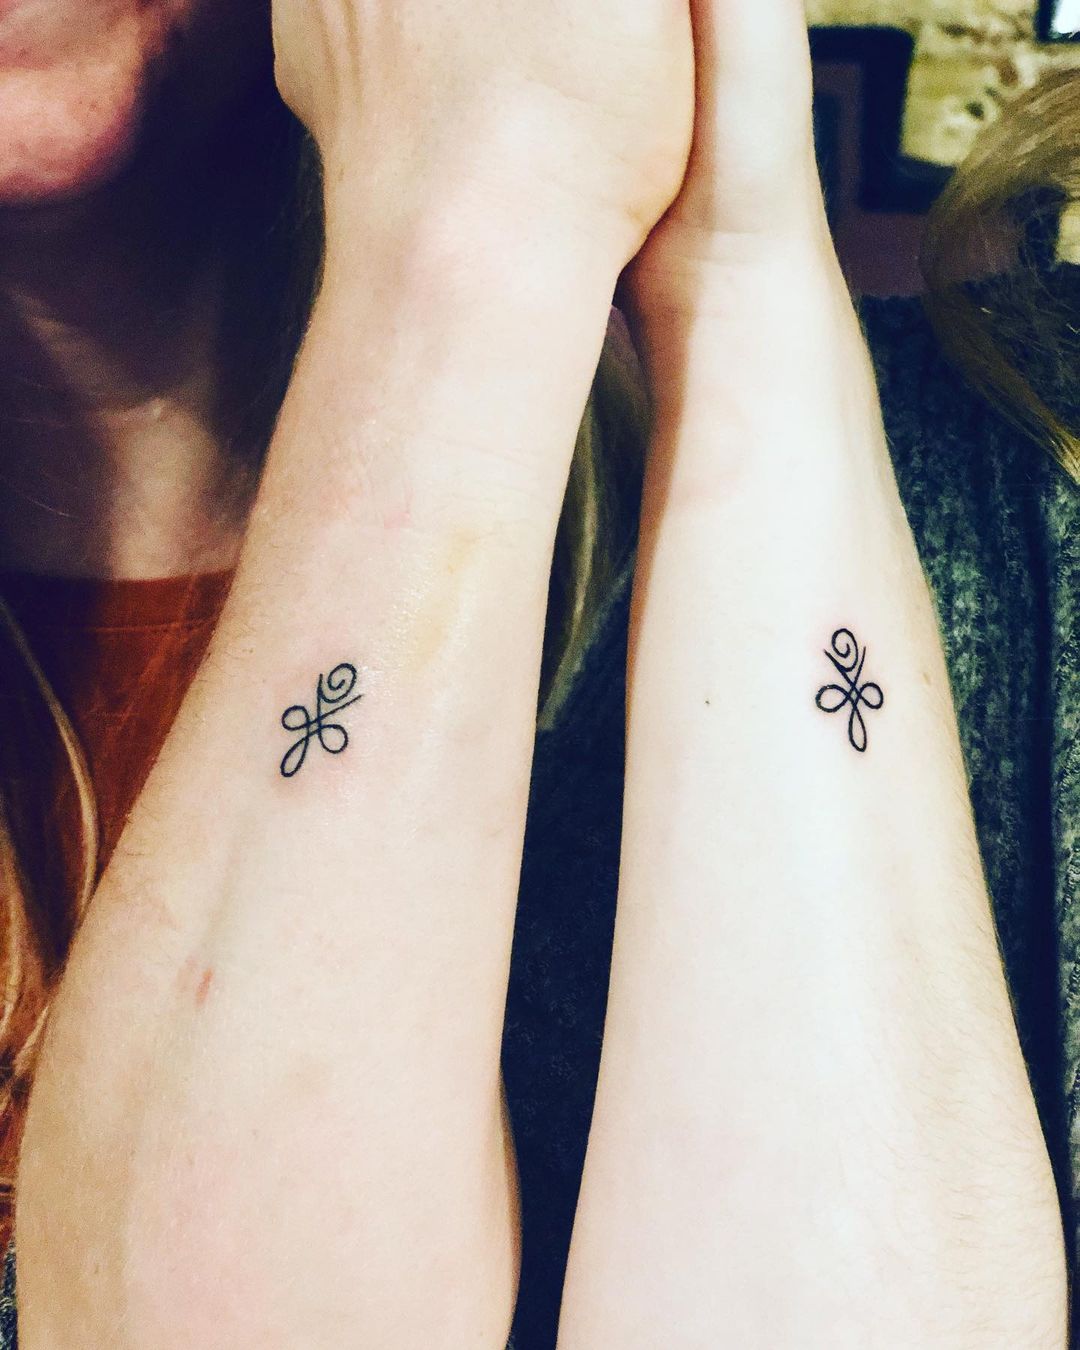 25 Tiny Best Friend Tattoos